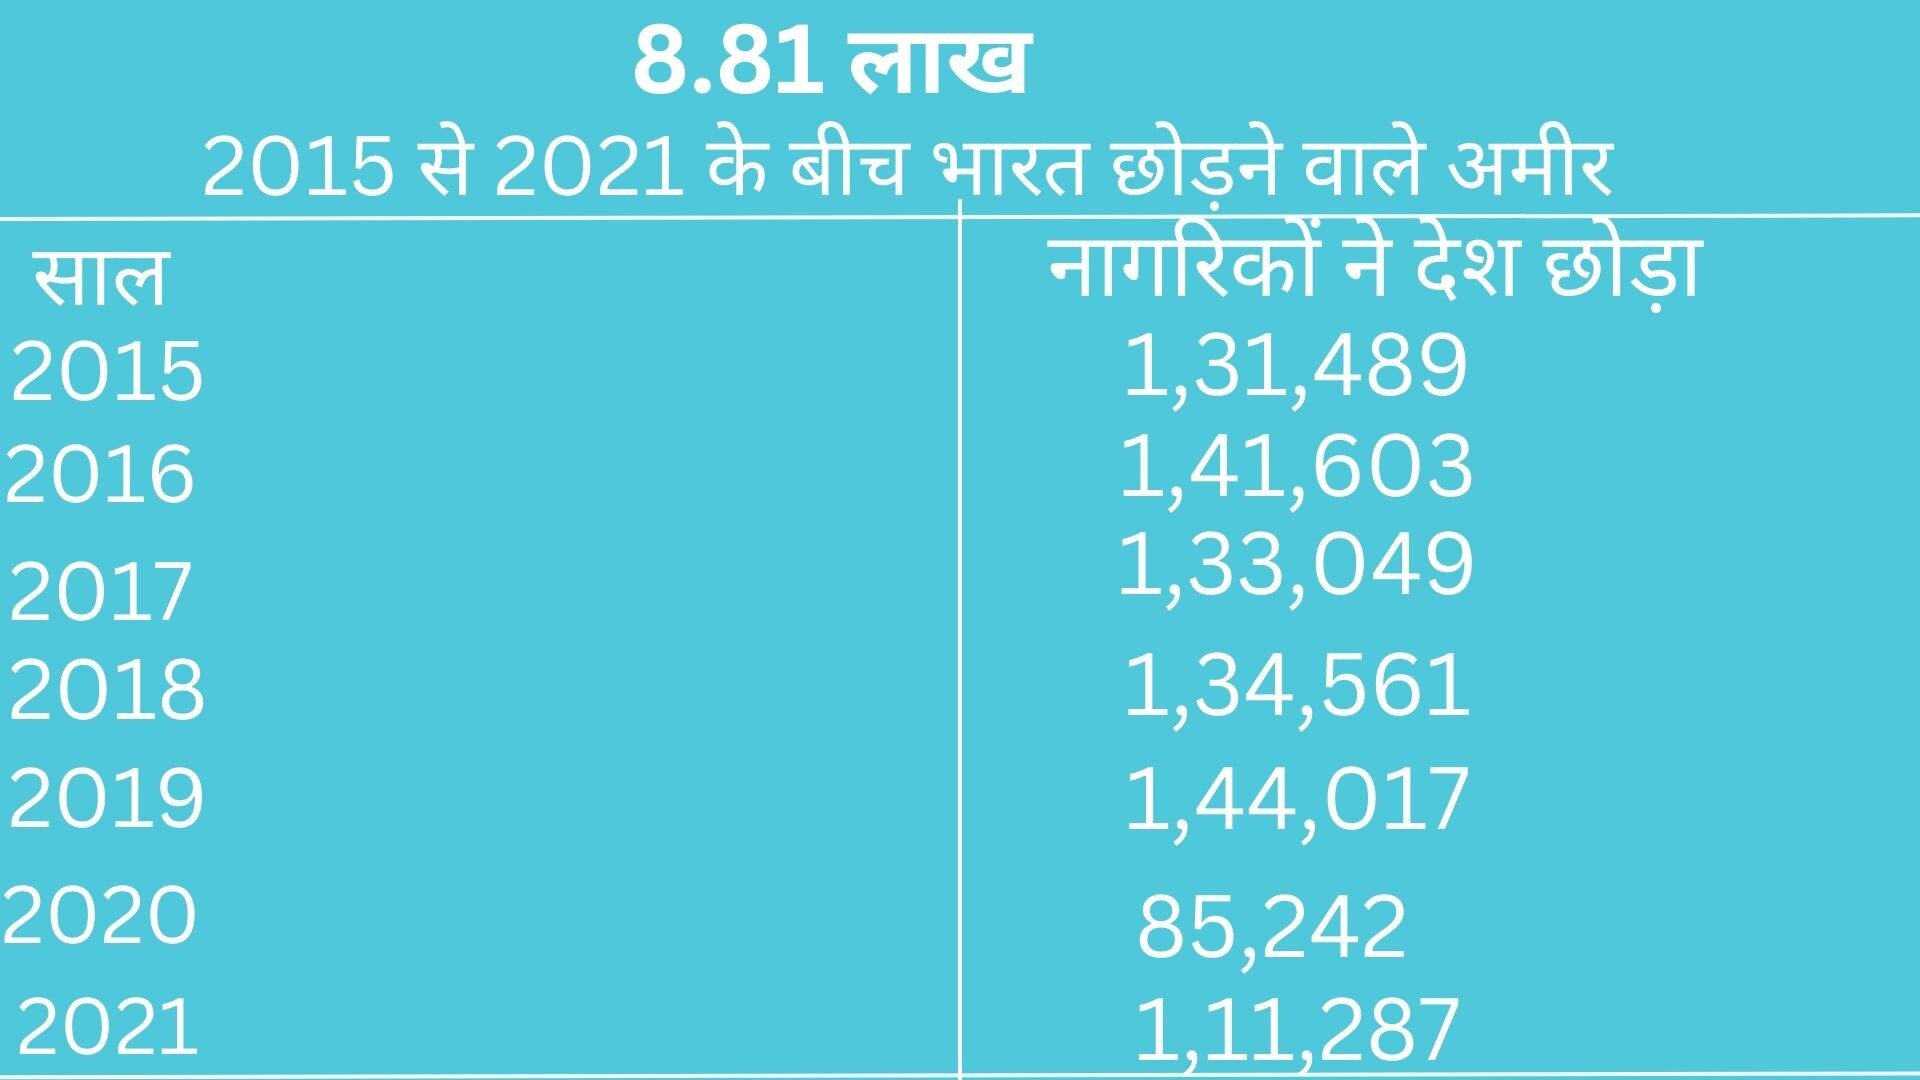 2023 में 6500 करोड़पति छोड़ सकते हैं भारत, किस देश को होगा सबसे ज्यादा फायदा?